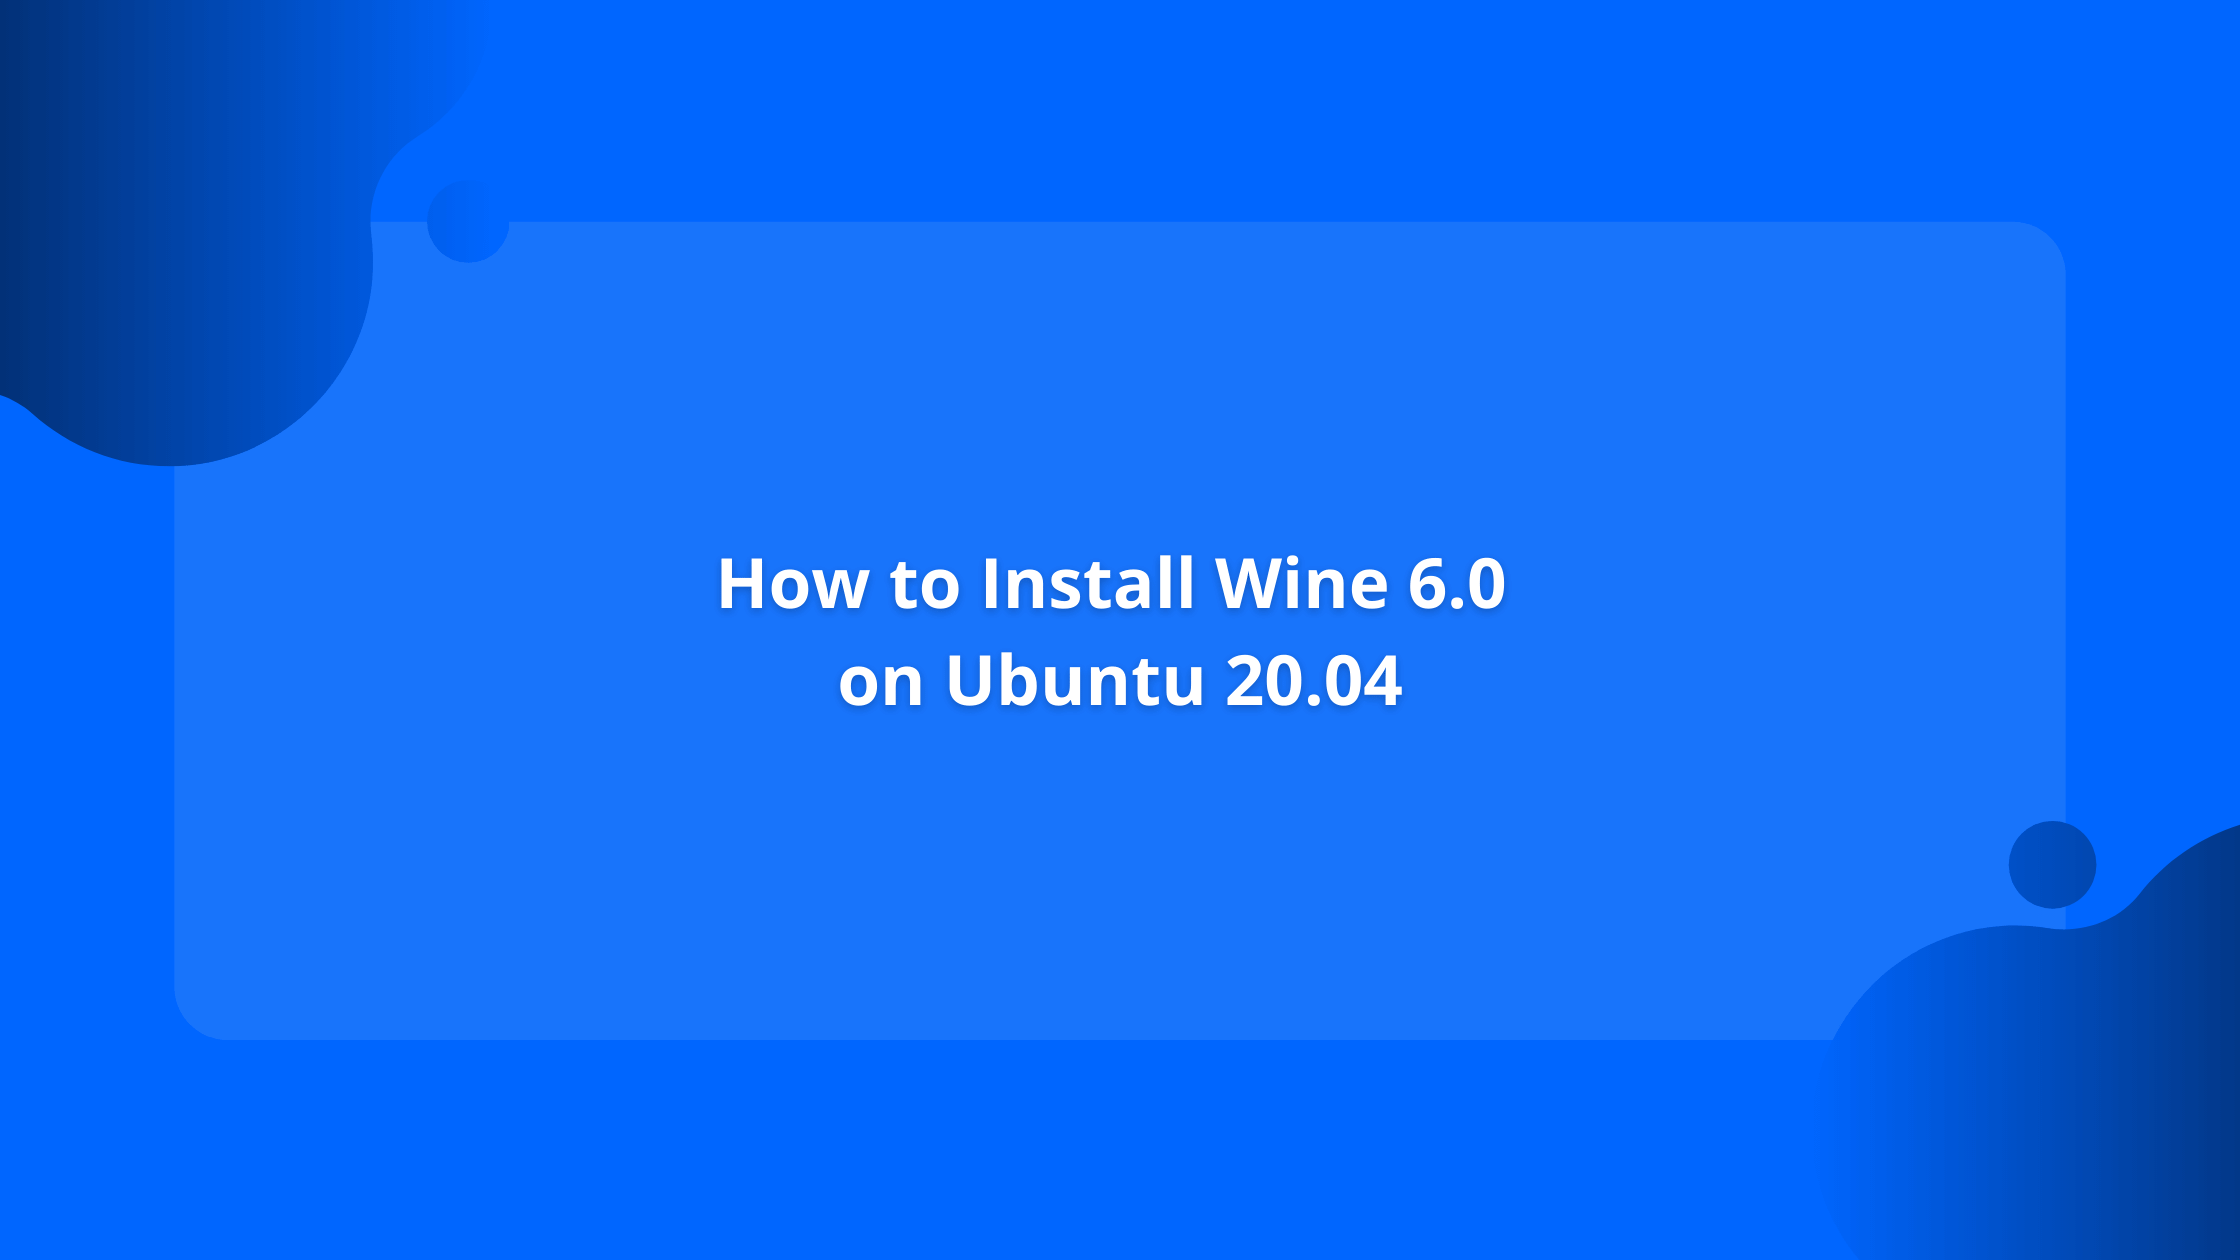 winelike program for mac application